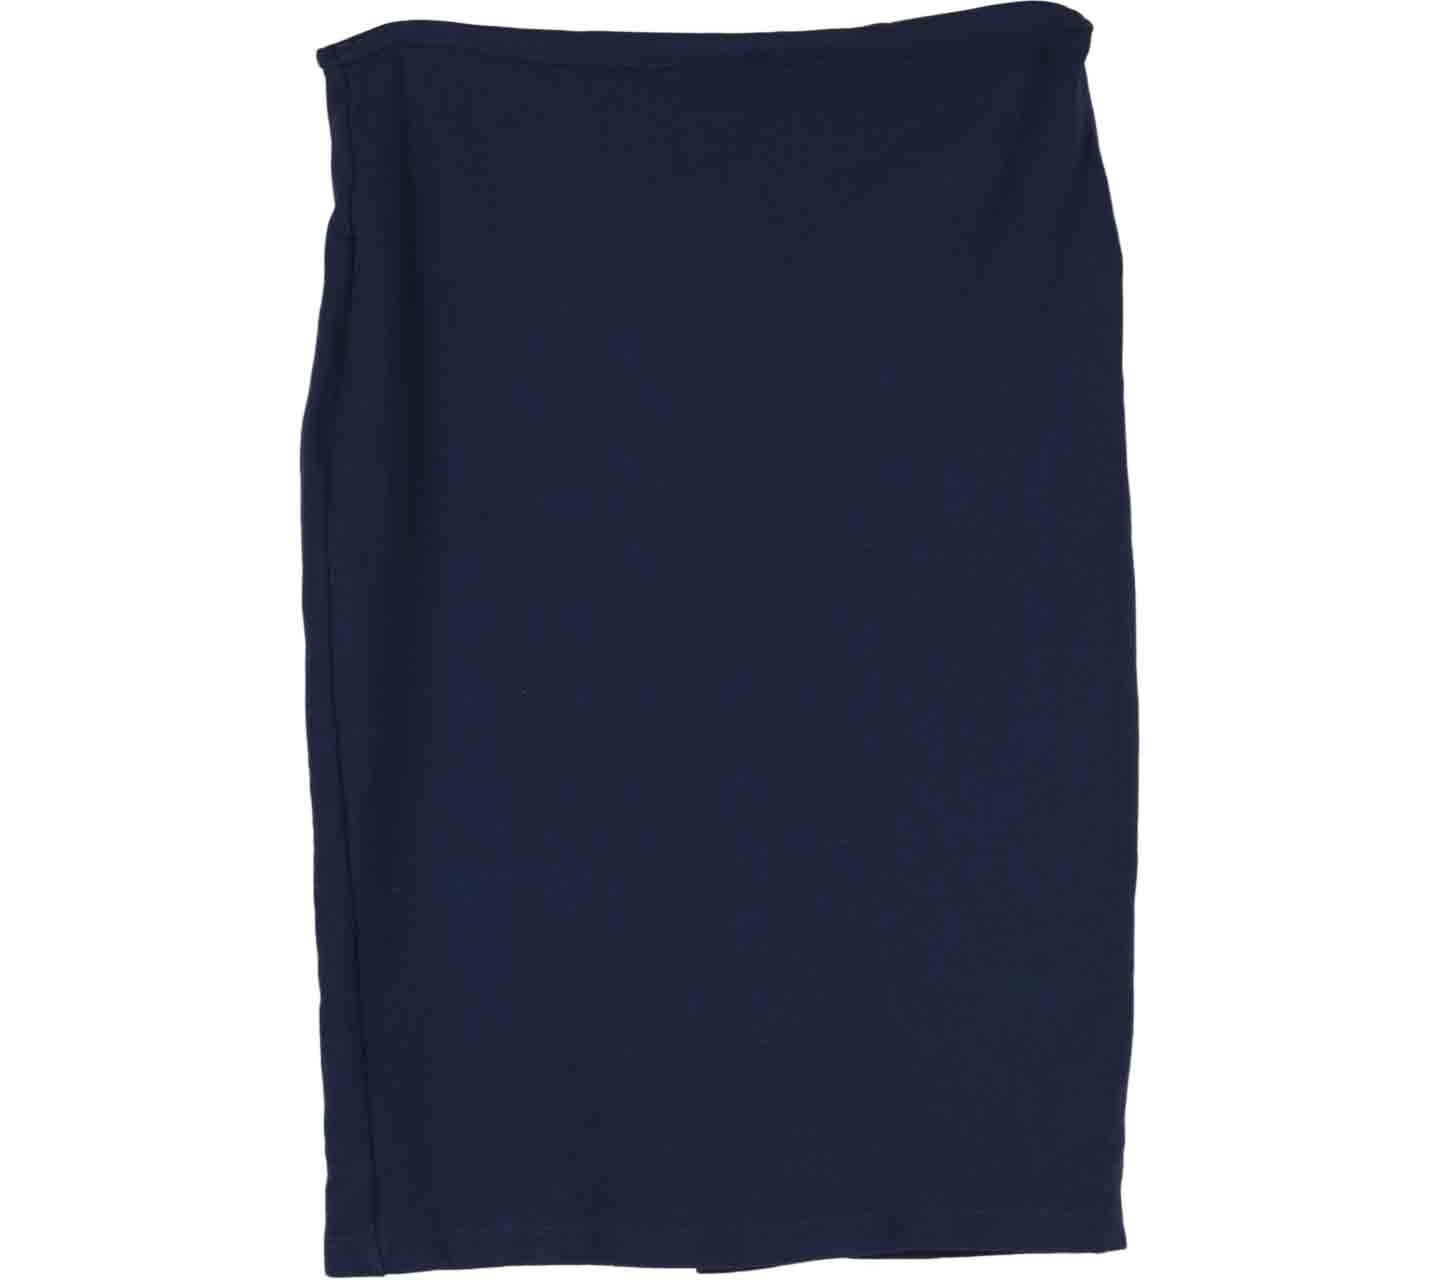 Zara Blue Pencil Mini Skirt